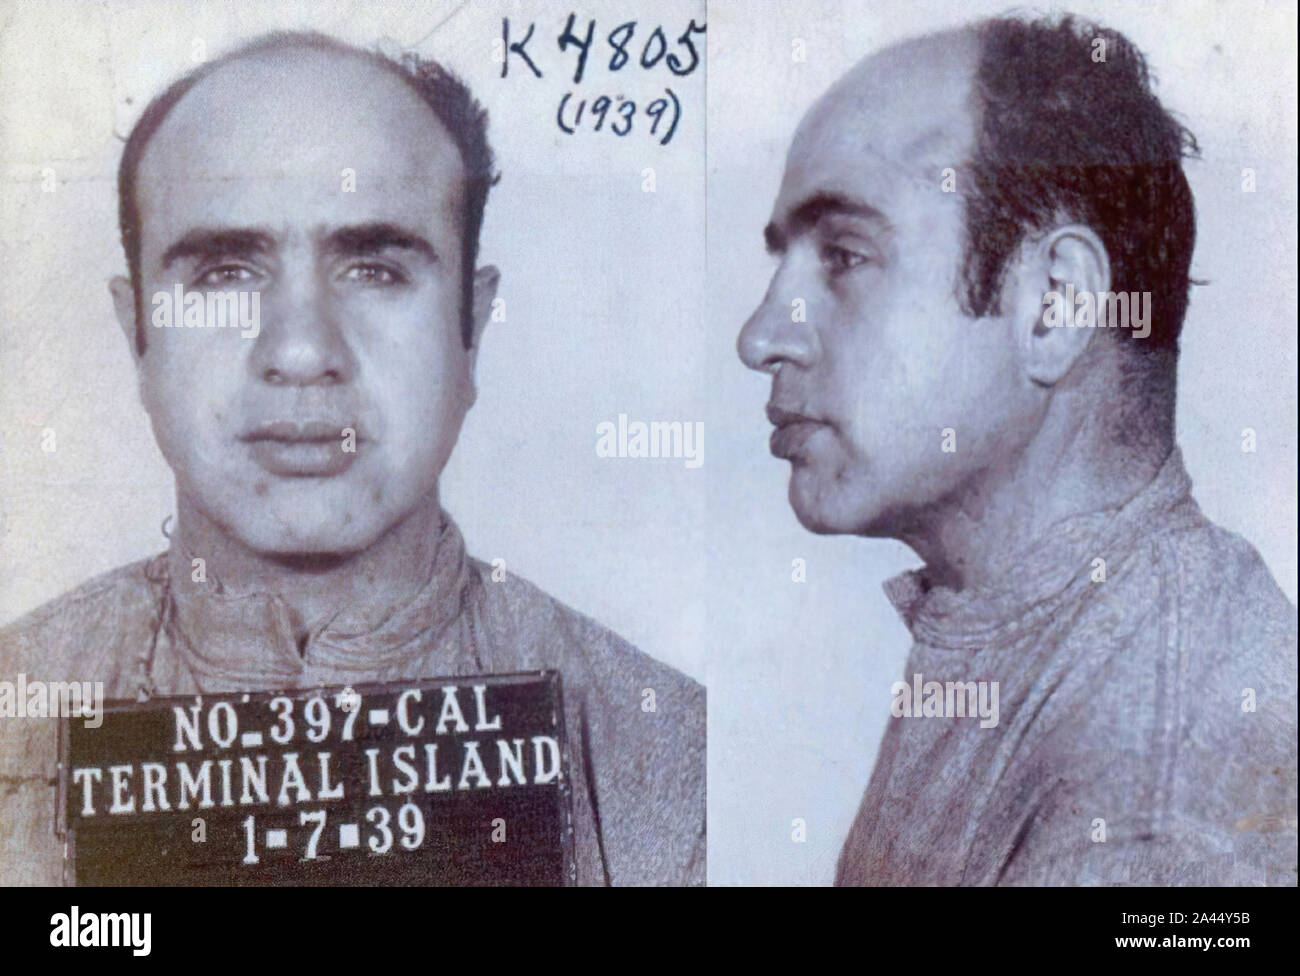 AL CAPONE - US-gangster (1899-1947) mugshot in Alcatraz Stockfoto